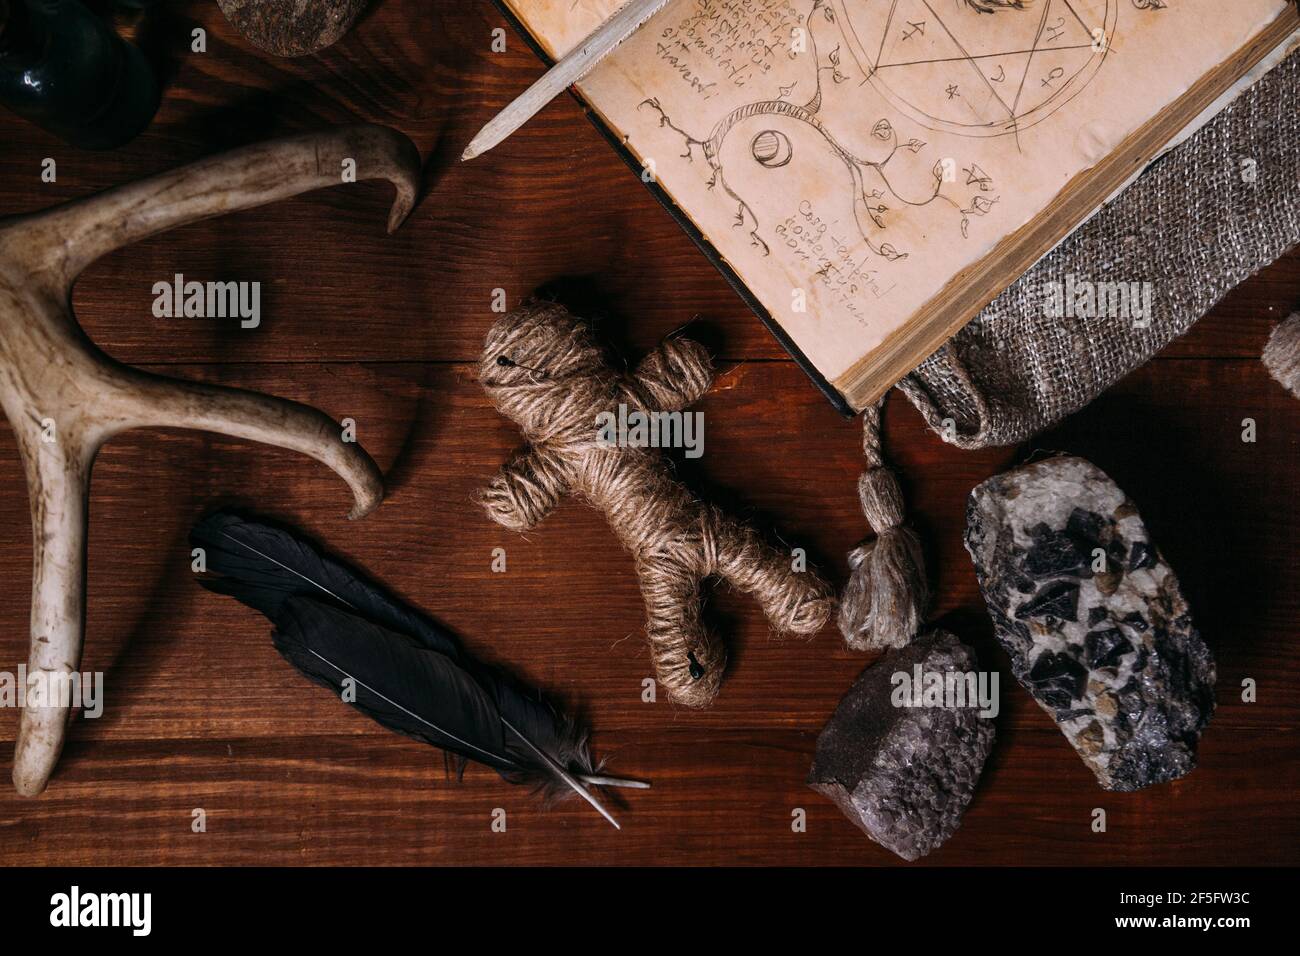 Una bambola voodoo fatta di corda si trova con il vecchio libro Grimoire, circondato da oggetti rituali magici: Candele, pietre, piume di corvo. Concetto di Halloween Foto Stock